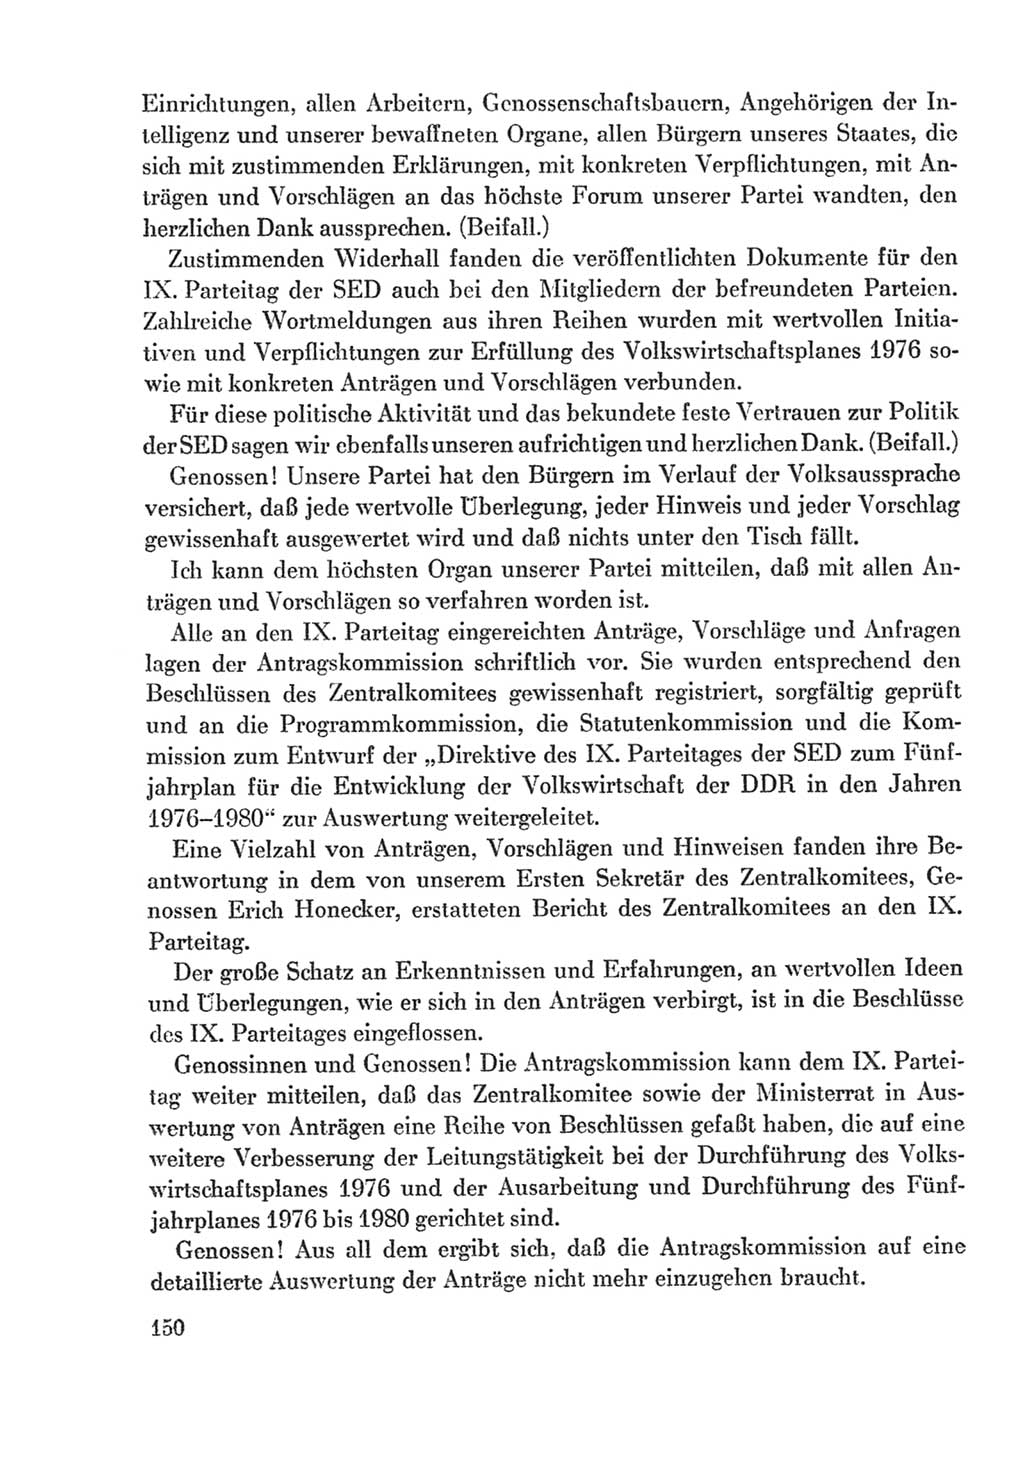 Protokoll der Verhandlungen des Ⅸ. Parteitages der Sozialistischen Einheitspartei Deutschlands (SED) [Deutsche Demokratische Republik (DDR)] 1976, Band 2, Seite 150 (Prot. Verh. Ⅸ. PT SED DDR 1976, Bd. 2, S. 150)